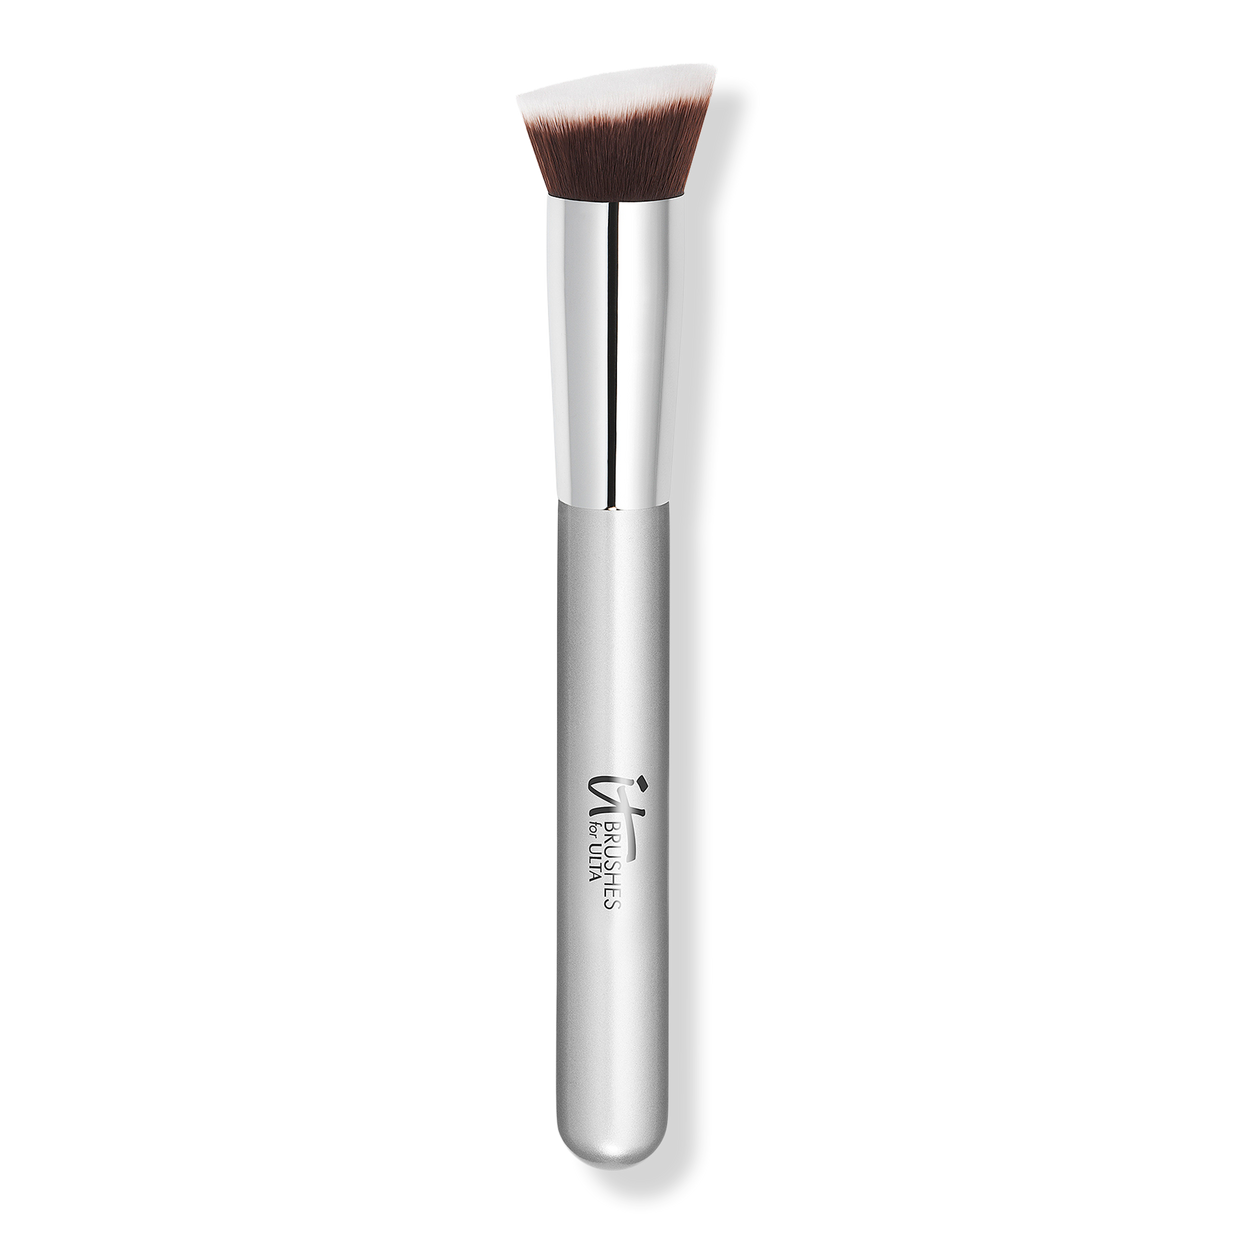 It Cosmetics Airbrush Blurring Foundation Brush